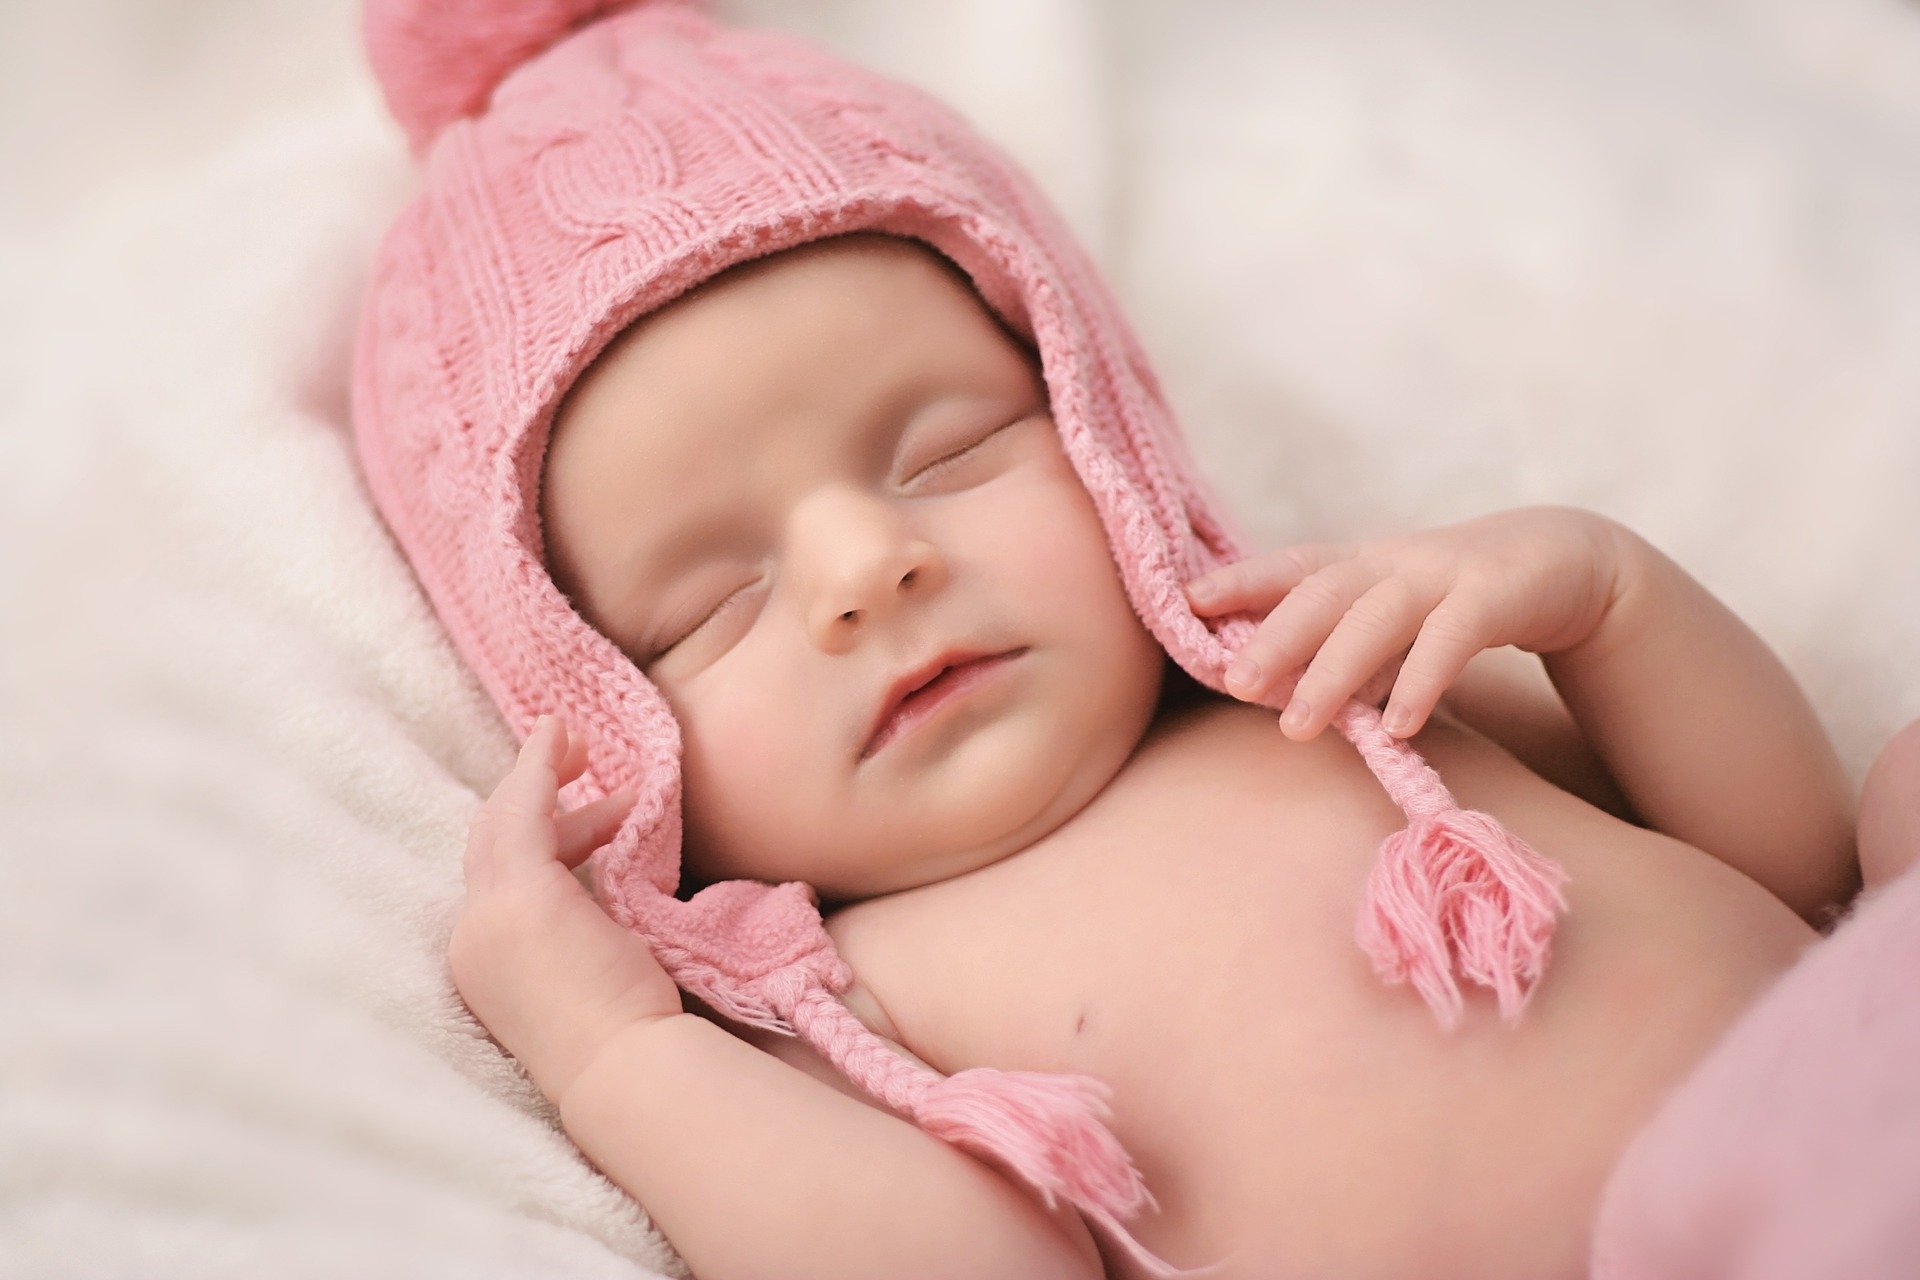 Un bébé bien portant. | Source : Pixabay